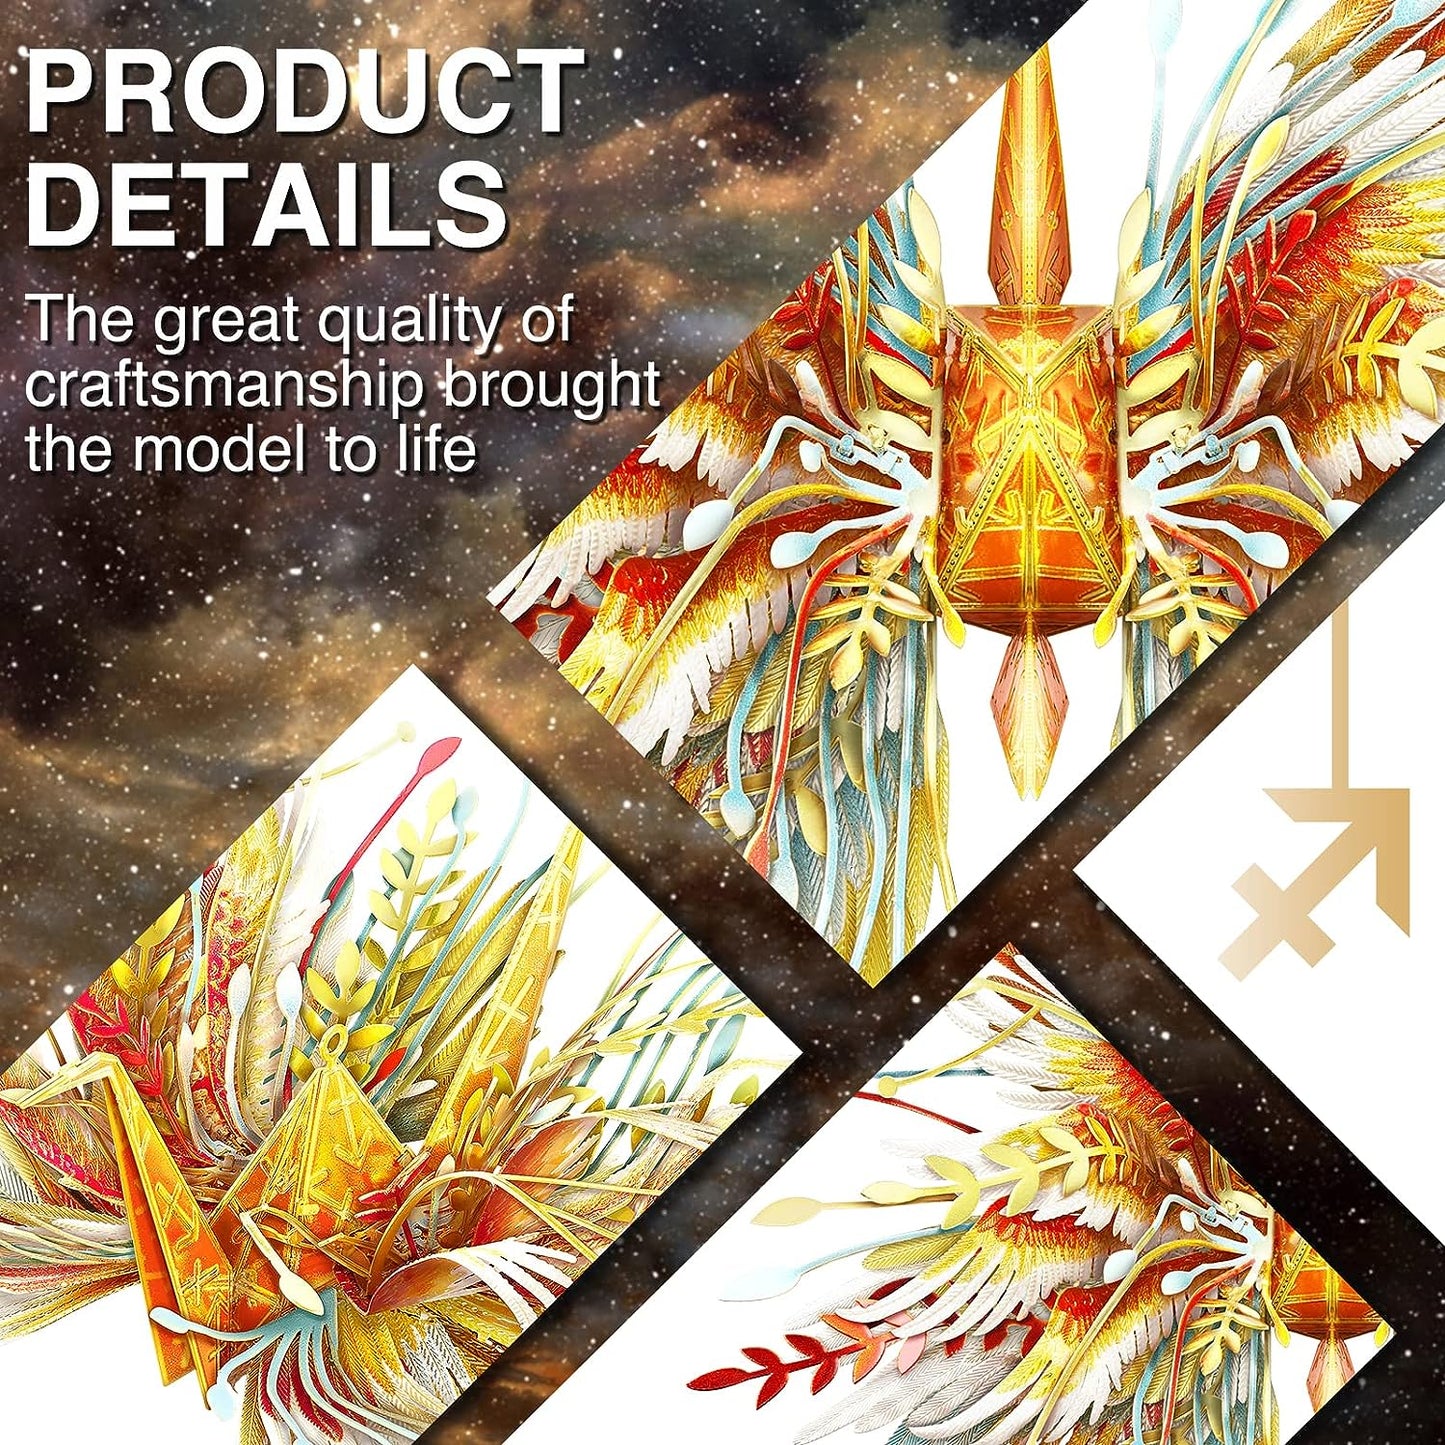 Piececool Sagittarius Wish Cranes 3D Metal Model Puzzles Gifts, 46Pcs